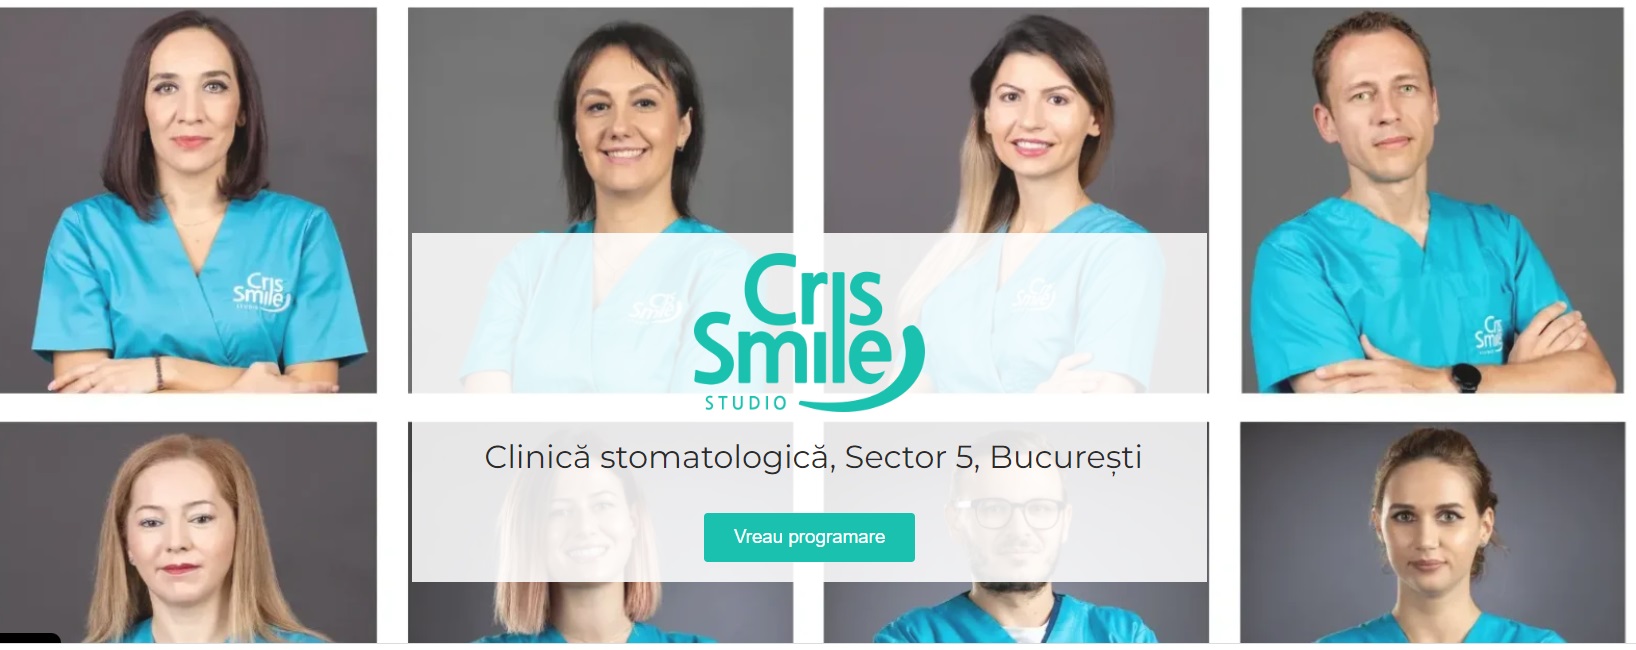 clinica-stomatologica-bucuresti-cris-smile